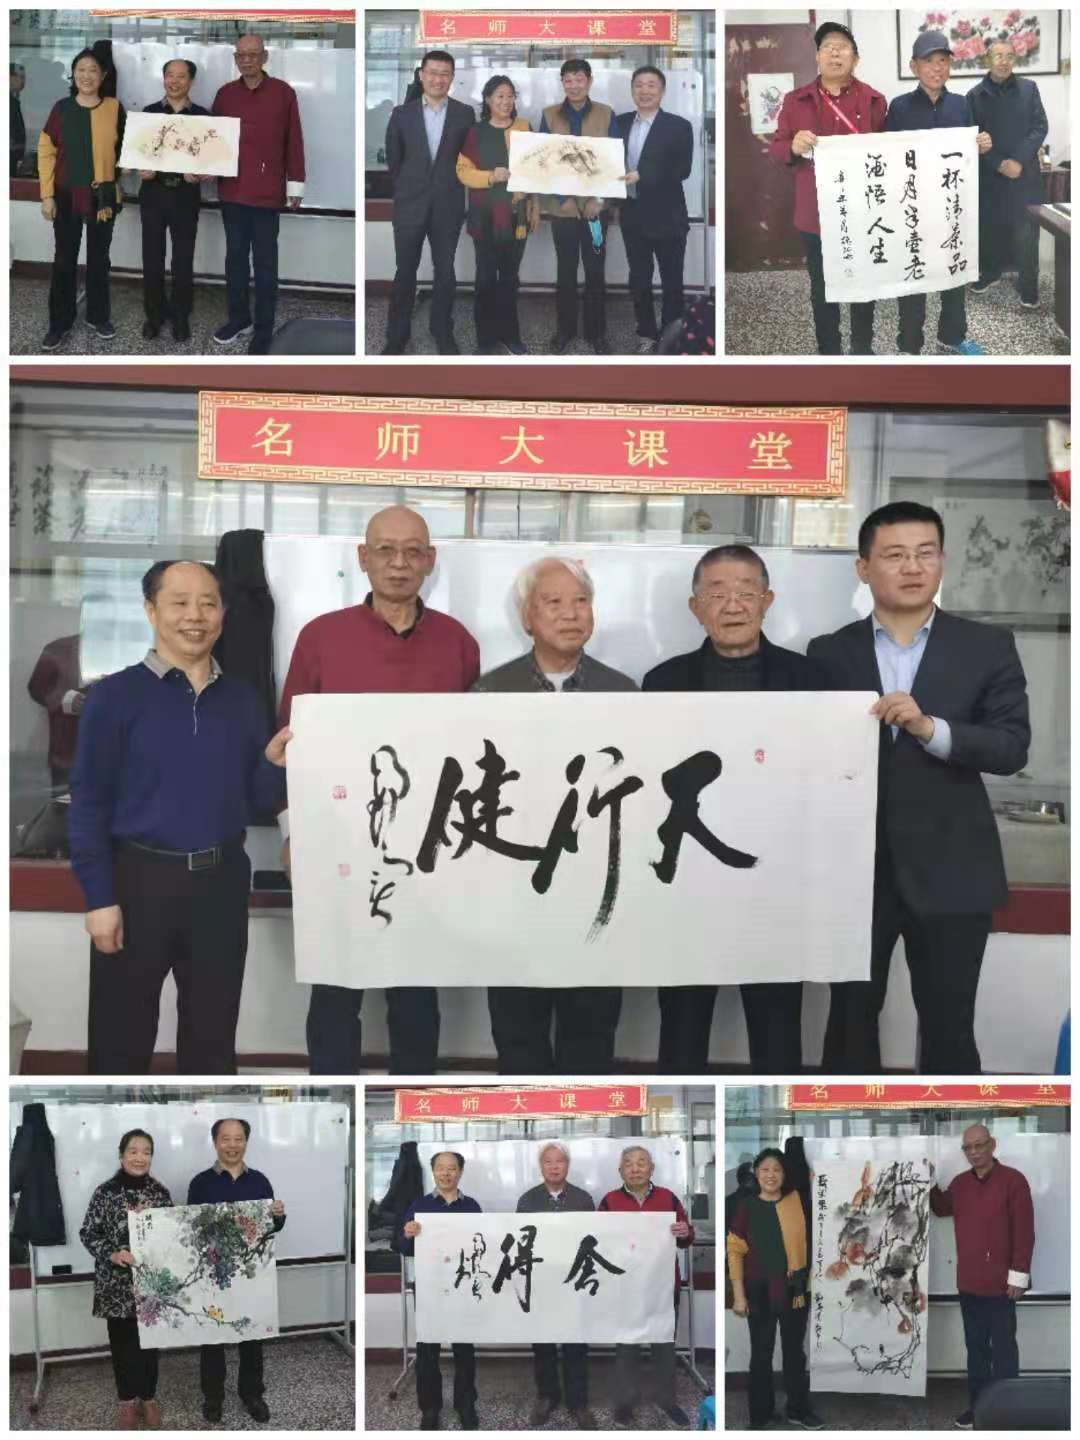 山东省老促会庆祝建党一百周年书画展征稿笔会在济南举办